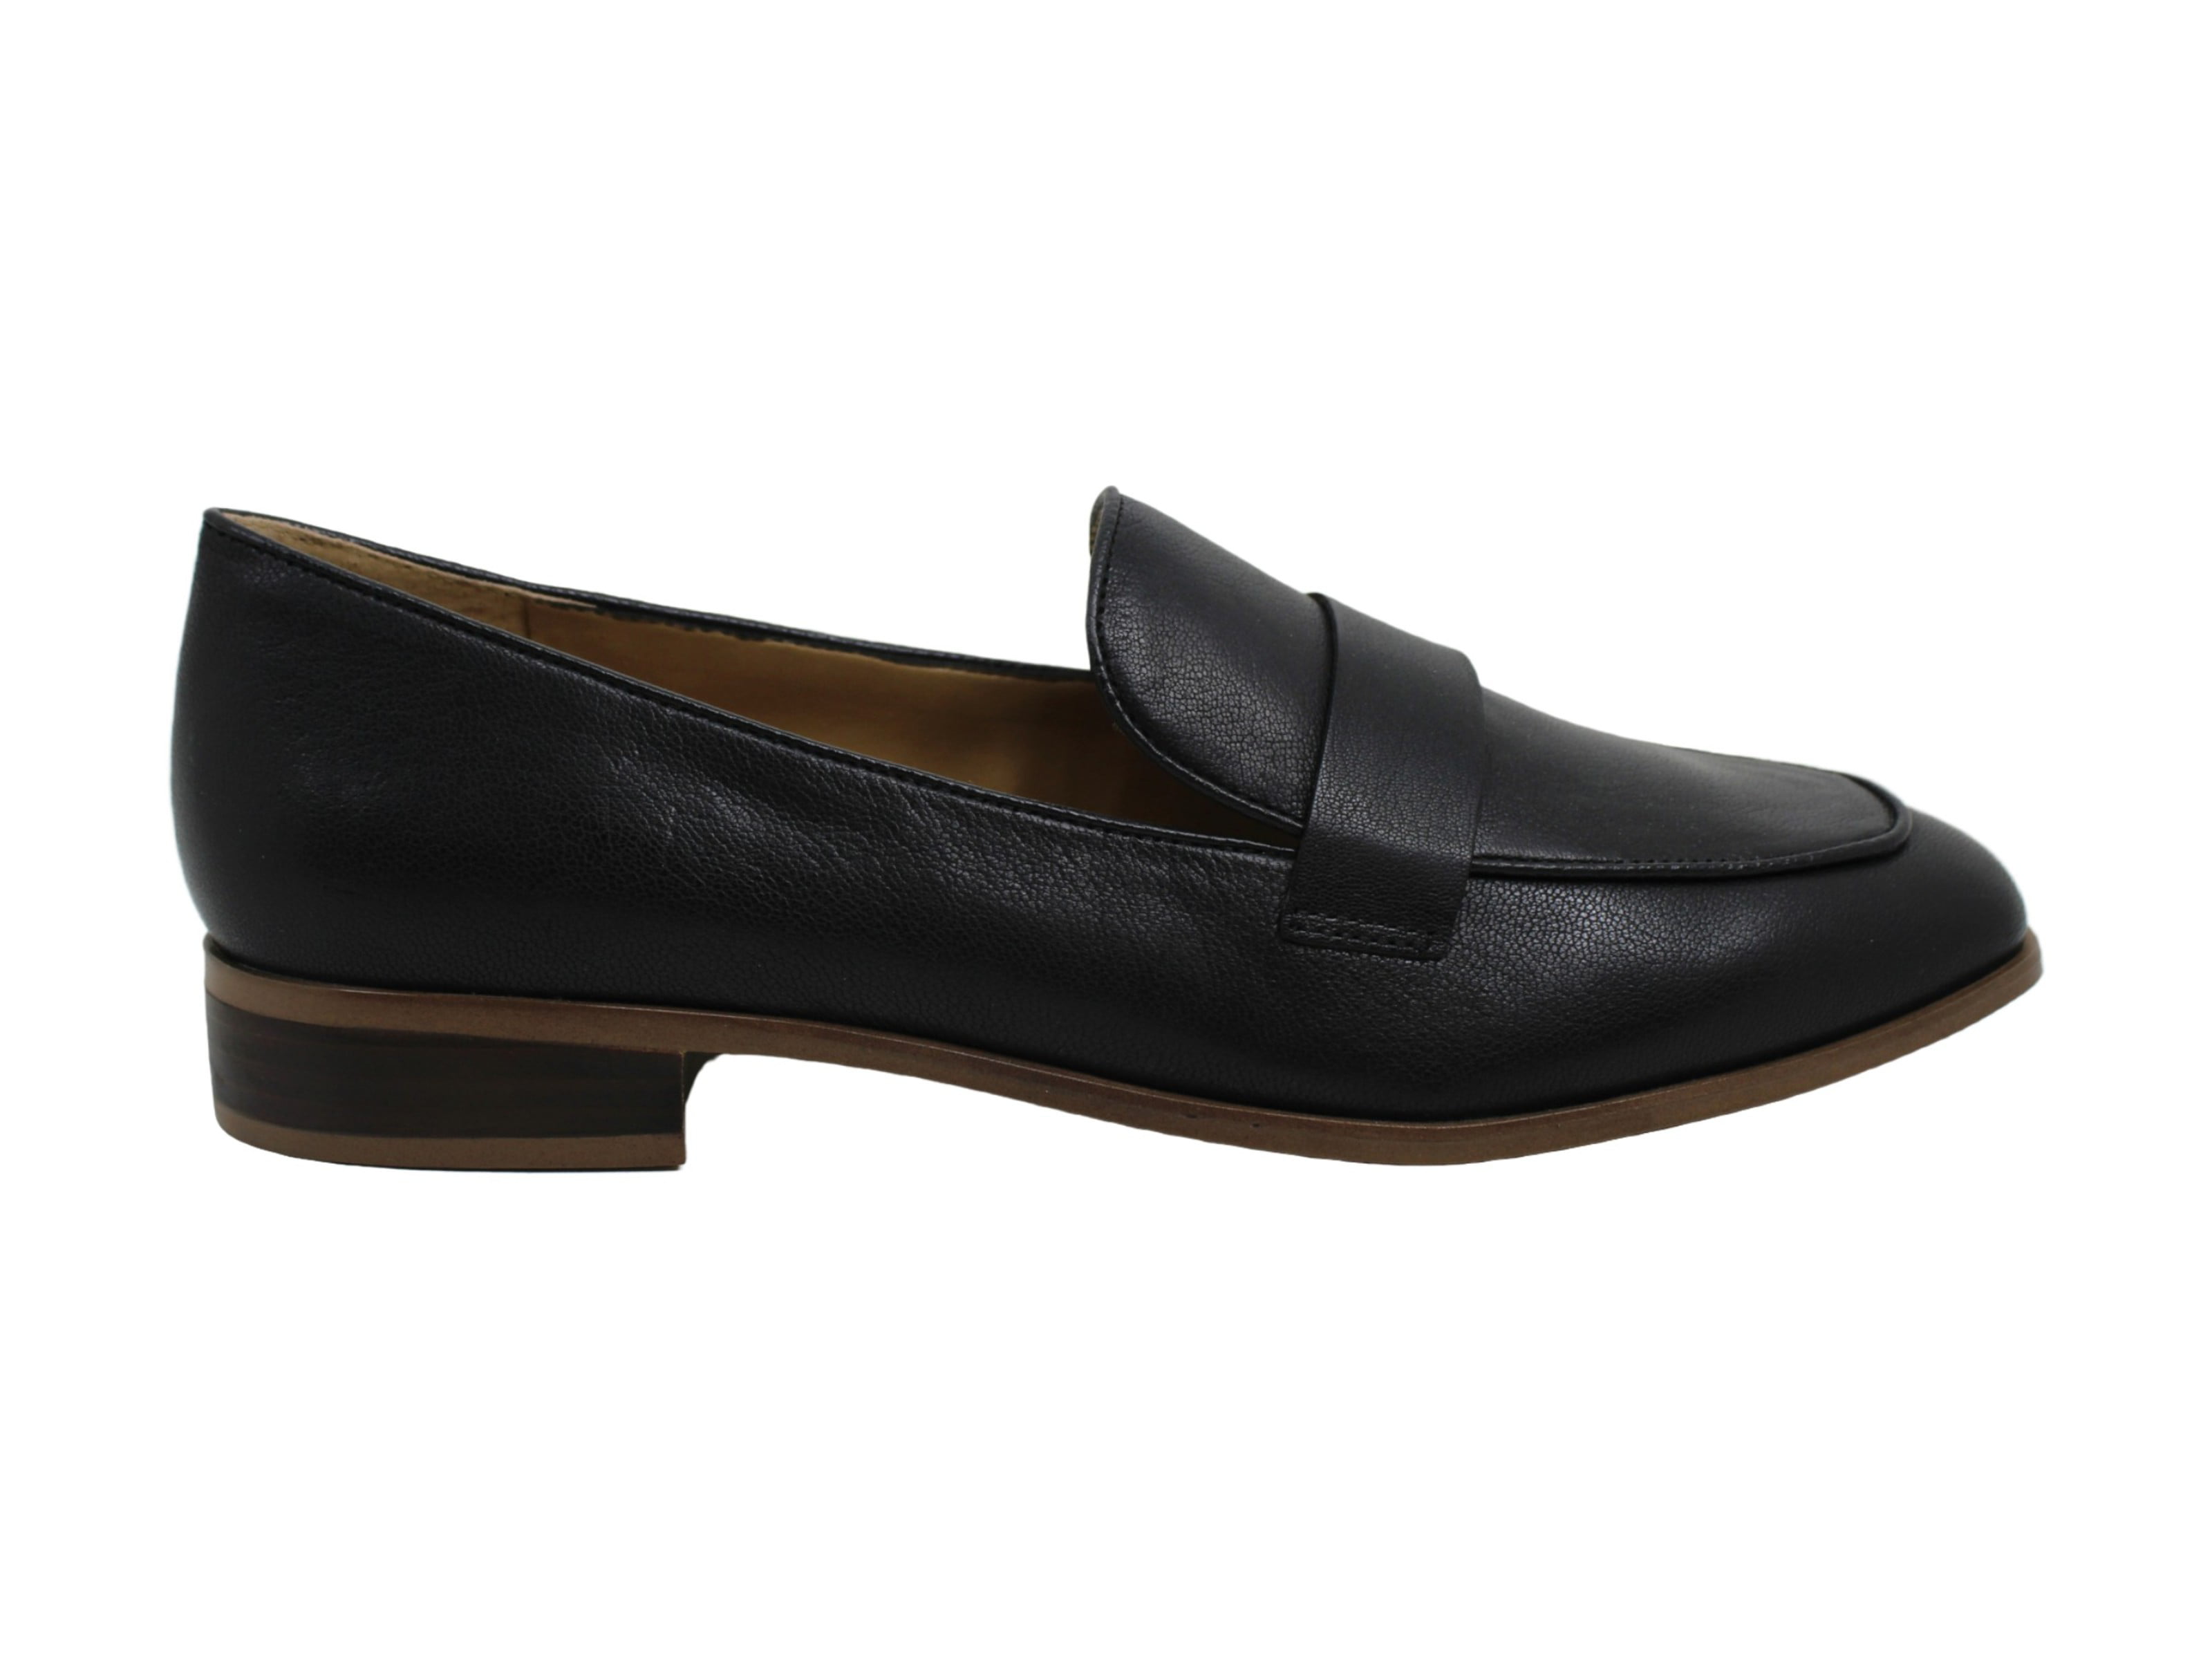 Womens Franco Sarto Square Toe Loafers, Black , 7.5 US / EU - Walmart.com